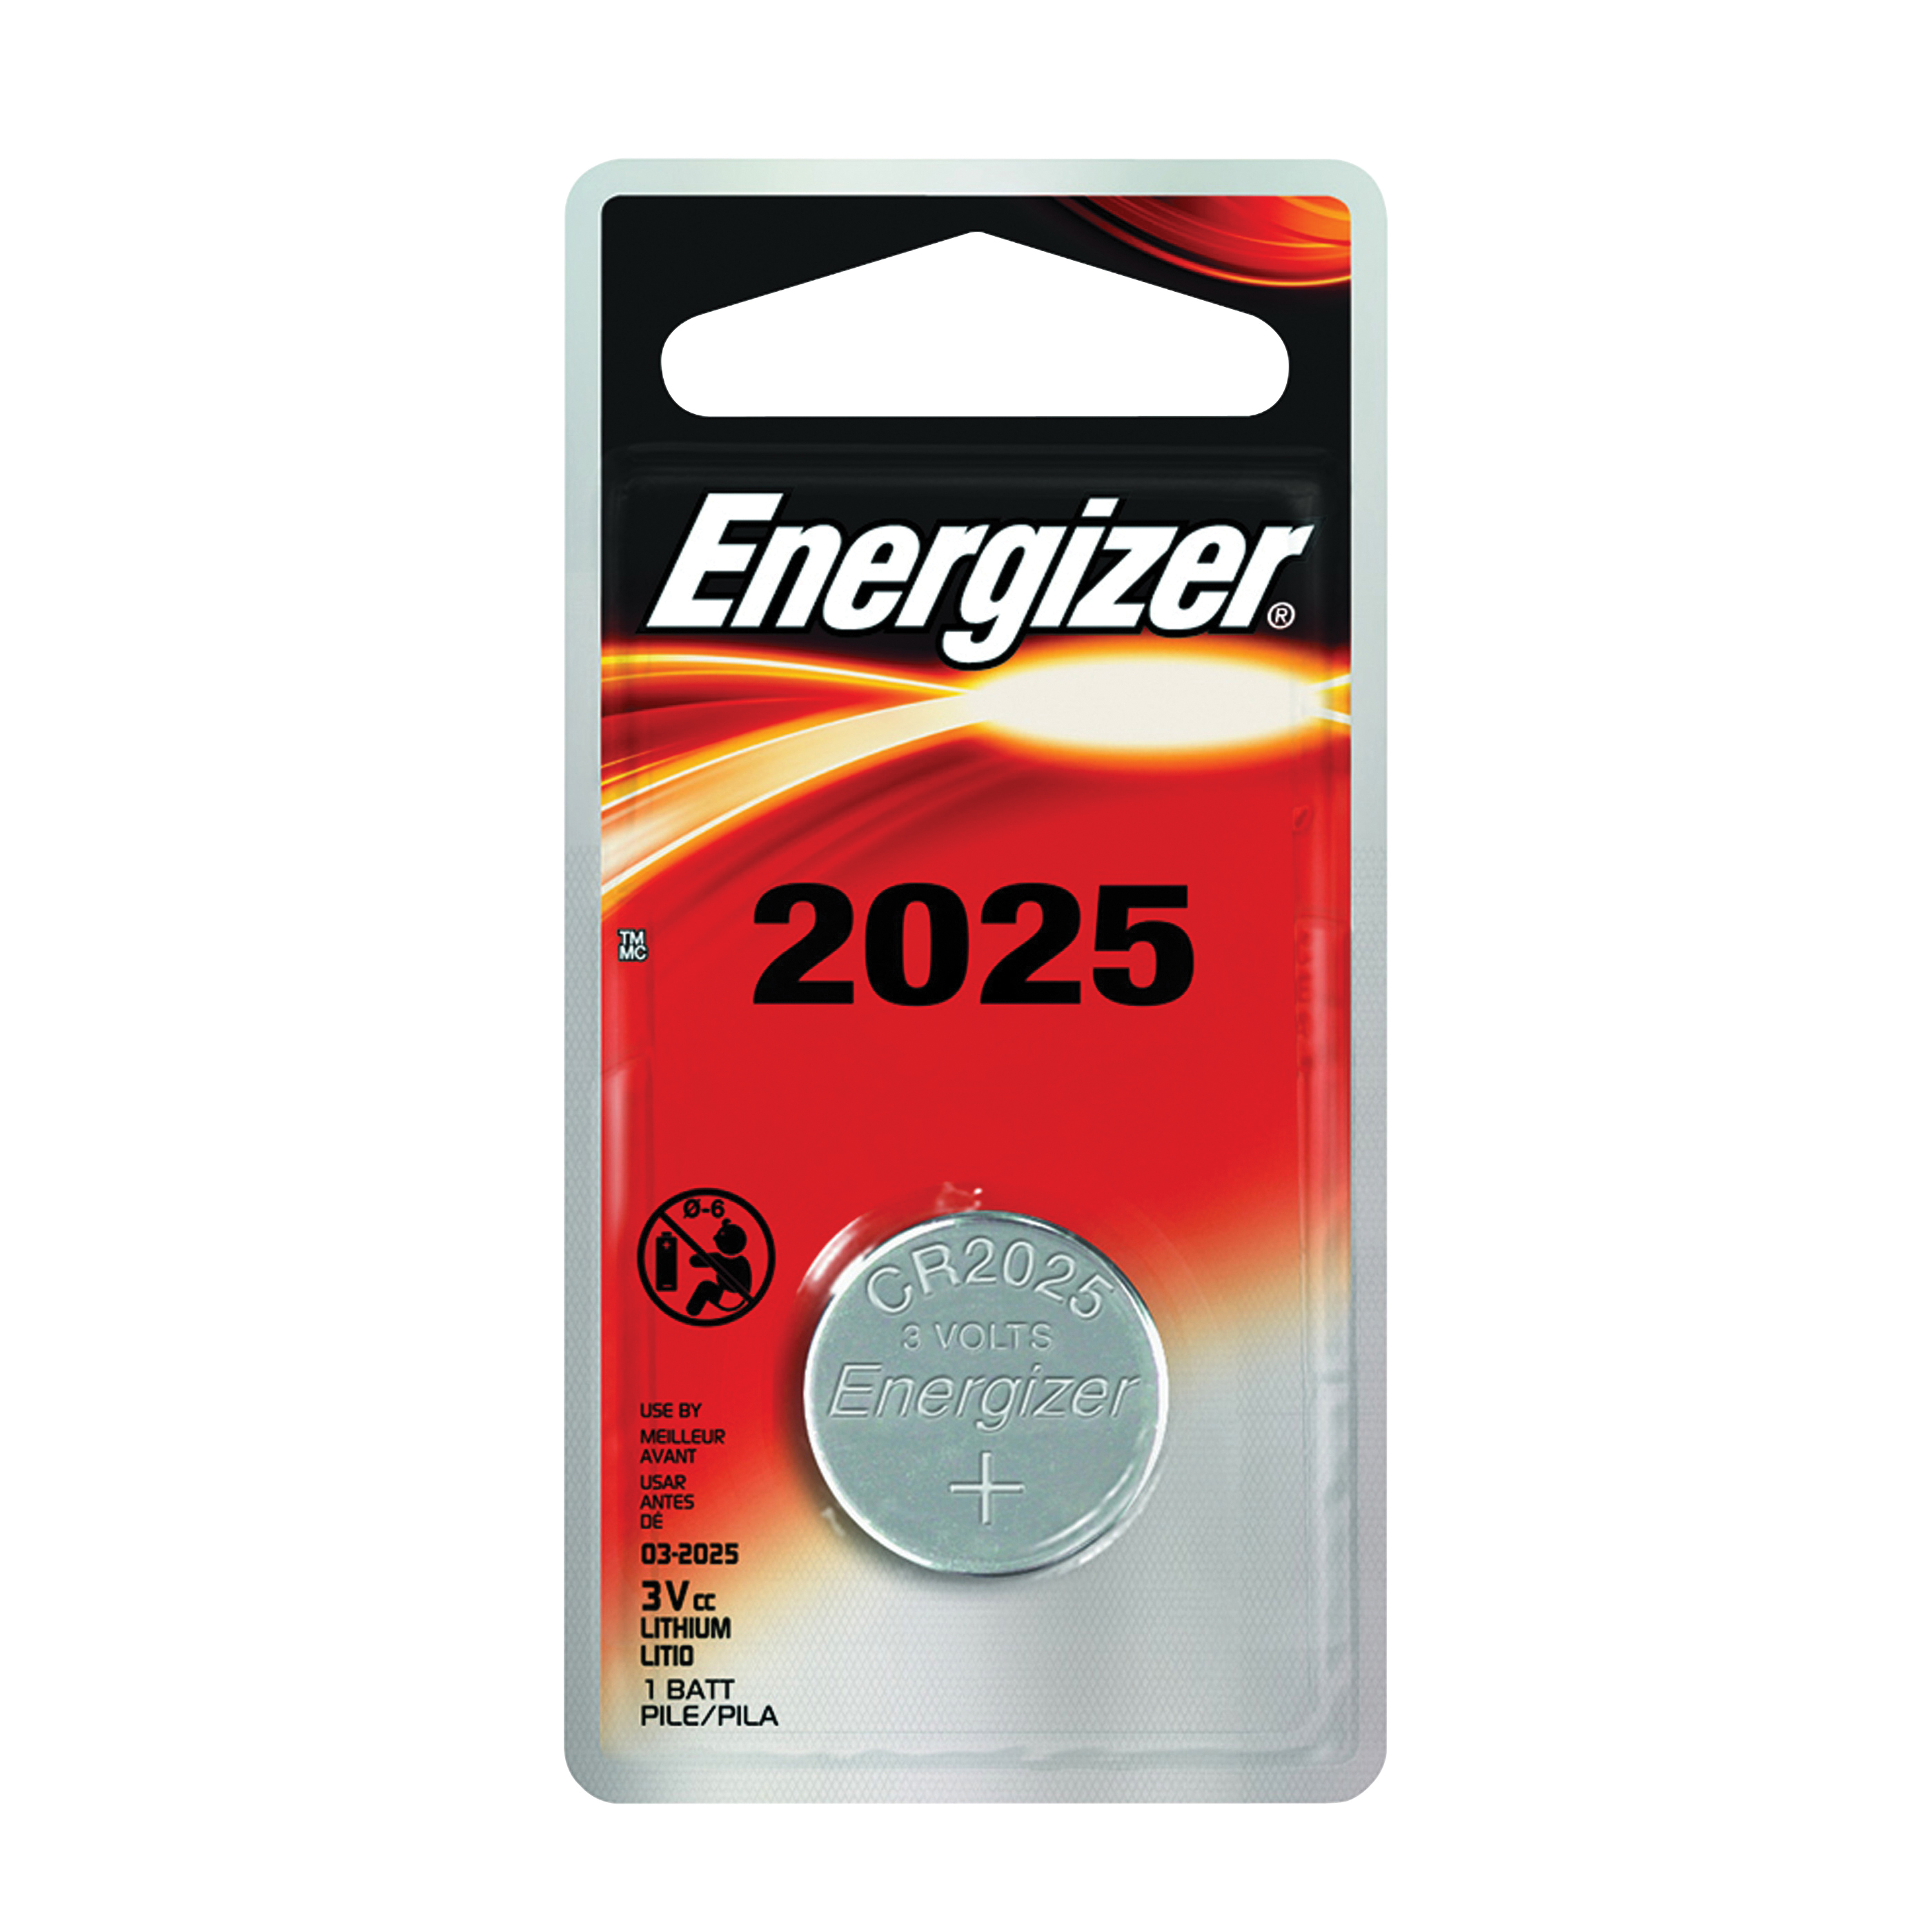 ECR2025BP Coin Cell Battery, 3 V Battery, 170 mAh, CR2025 Battery, Lithium, Manganese Dioxide